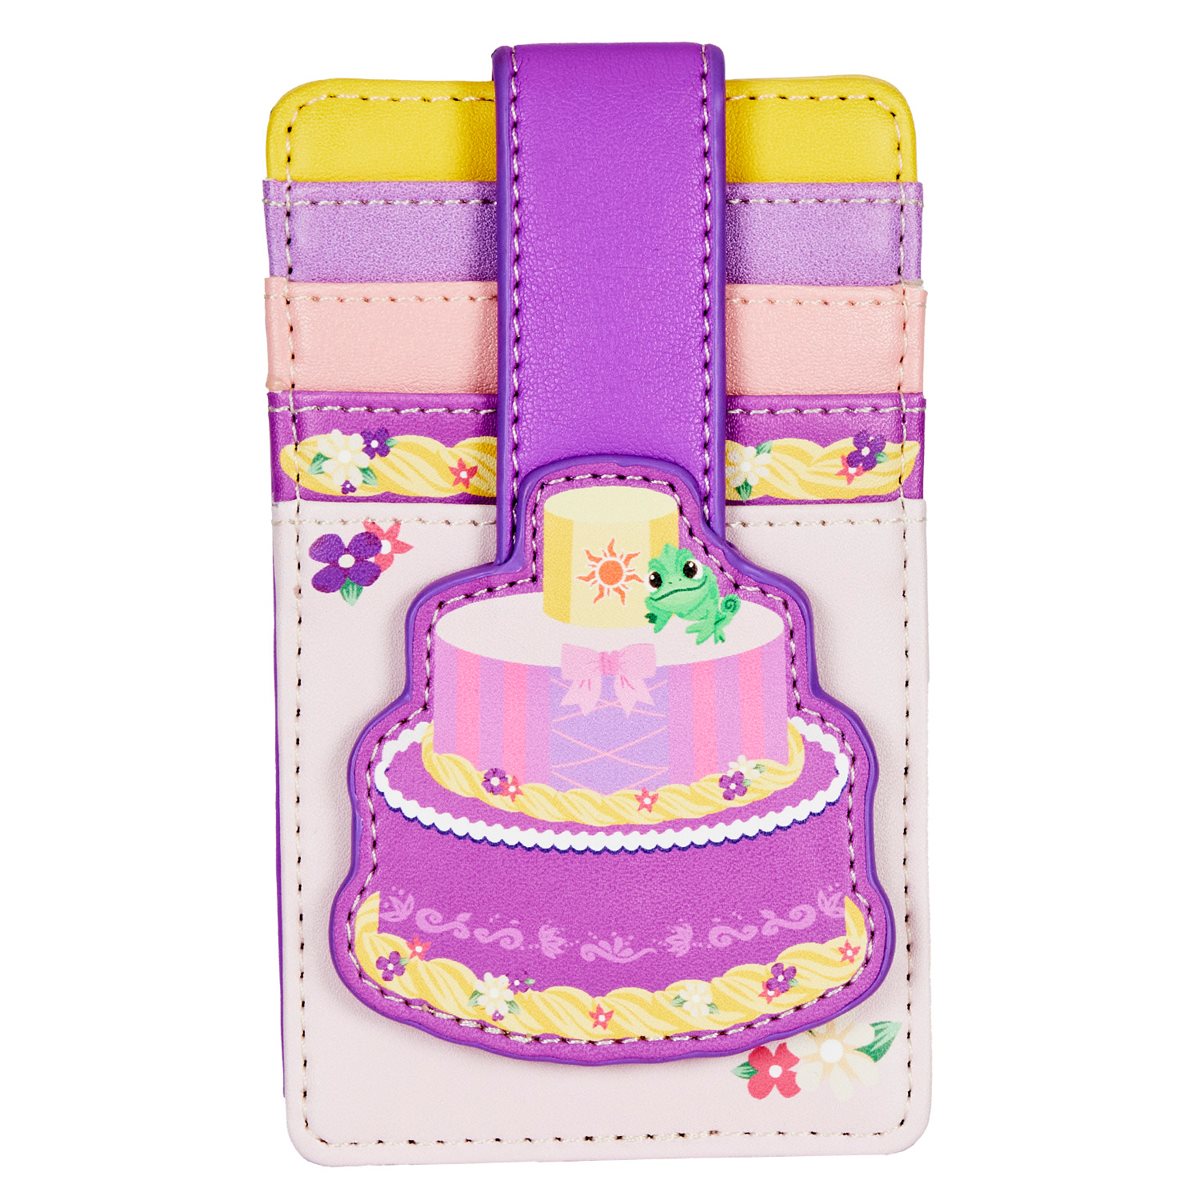 iphone 5c cakes